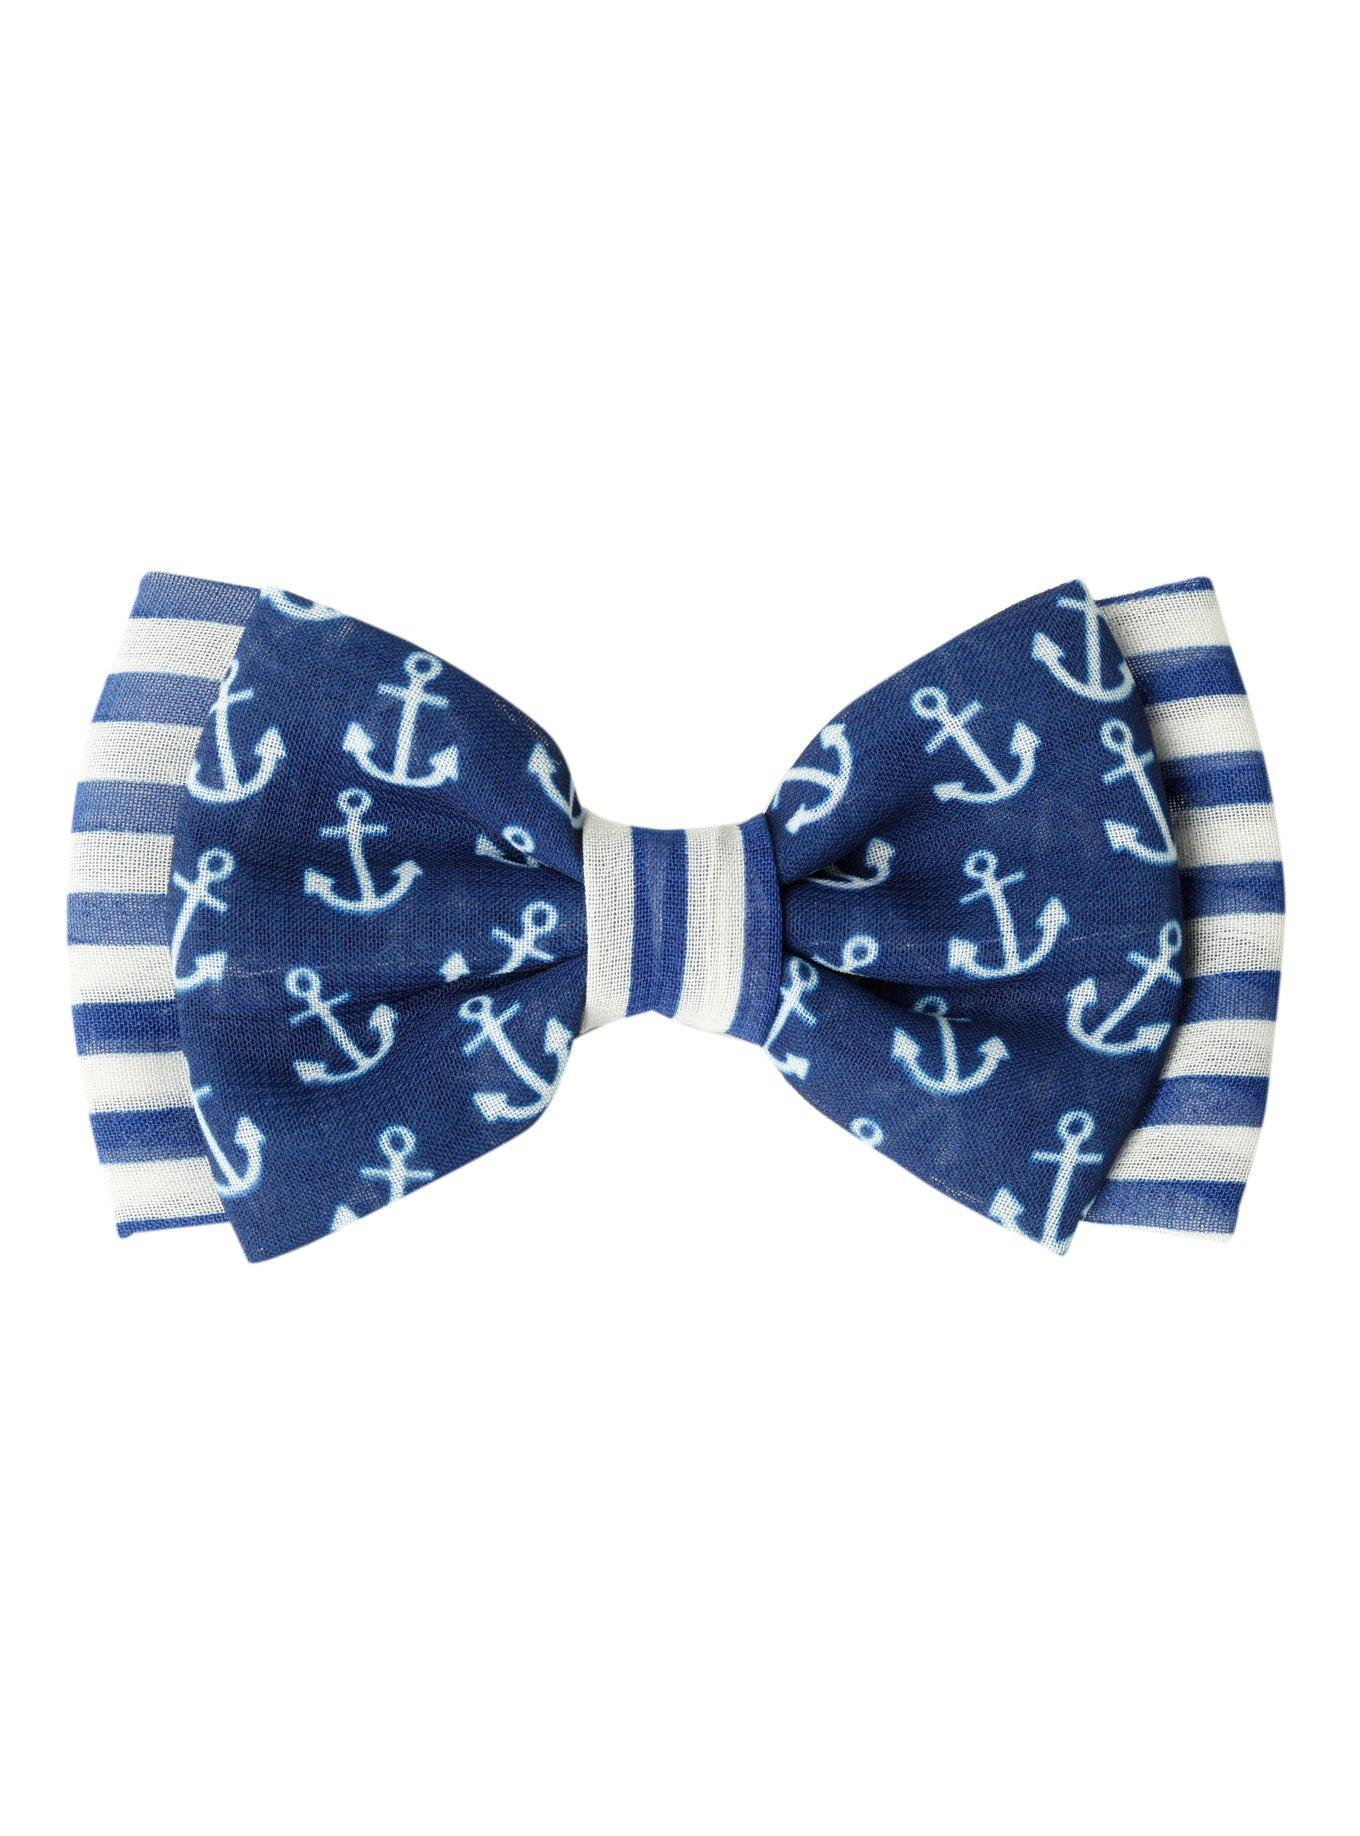 Blue & White Anchor & Stripes Hair Bow, , hi-res